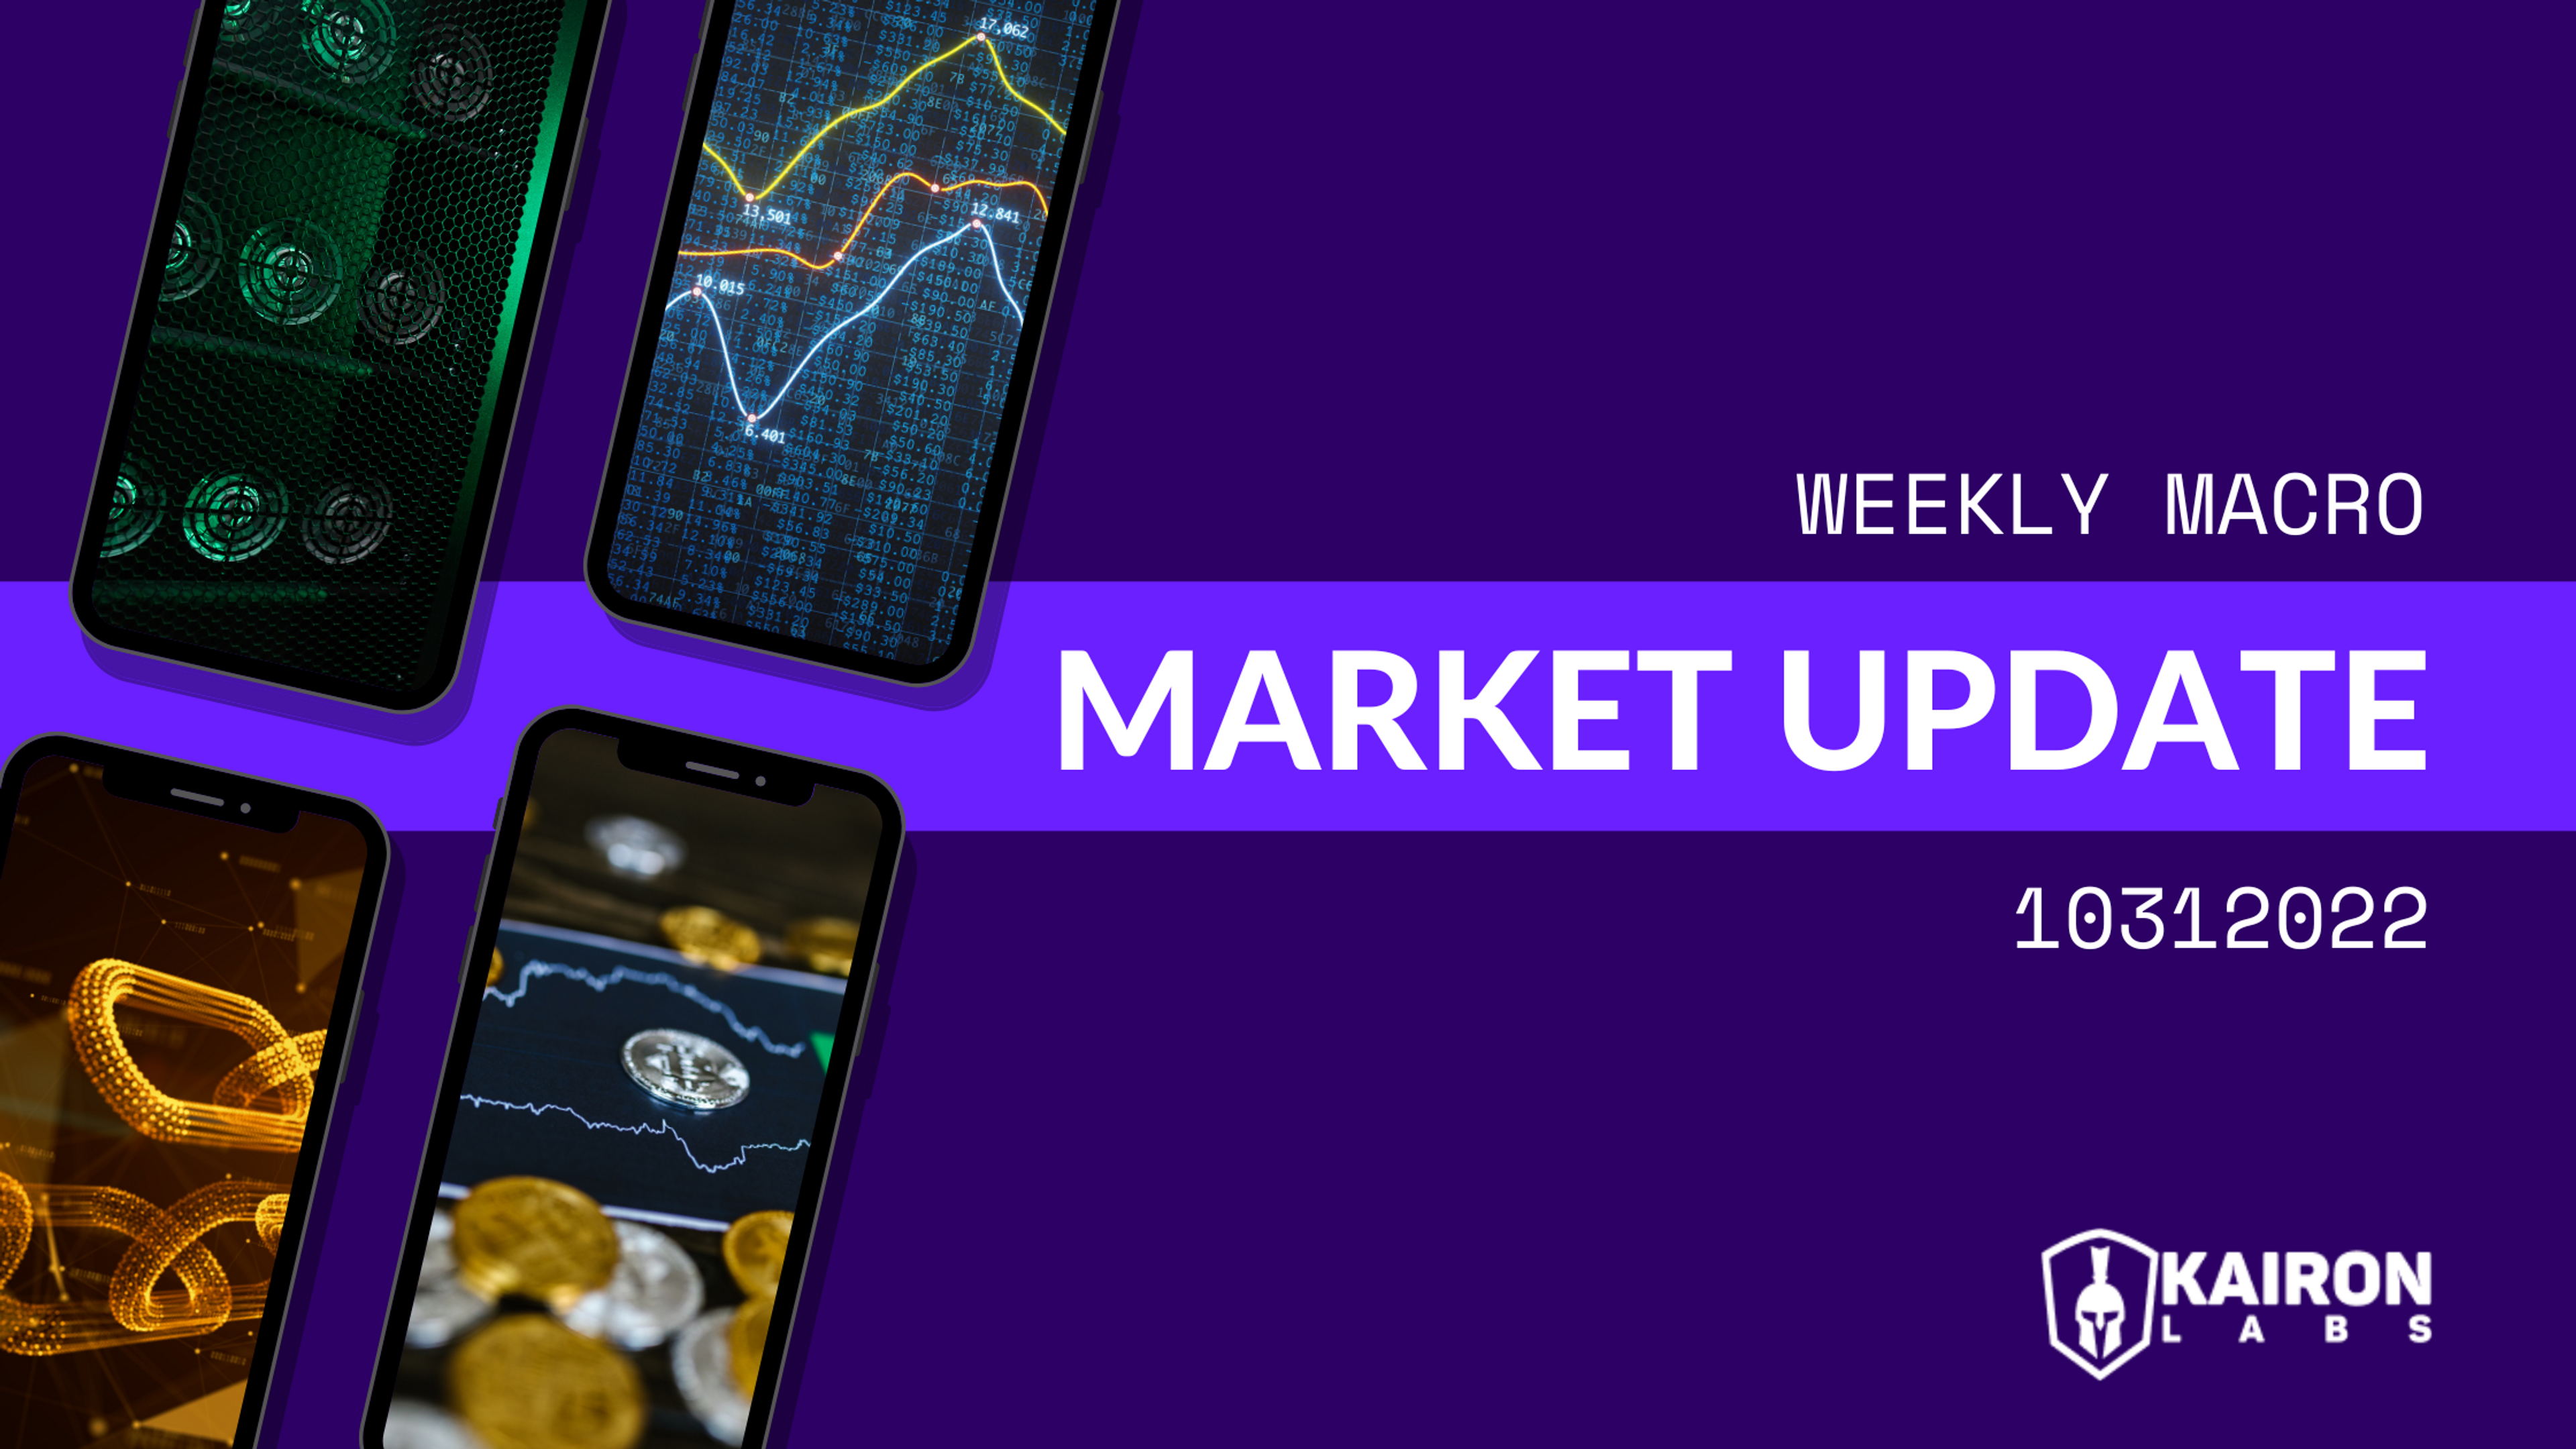 Weekly Macro Market Update - Oct 31, 2022